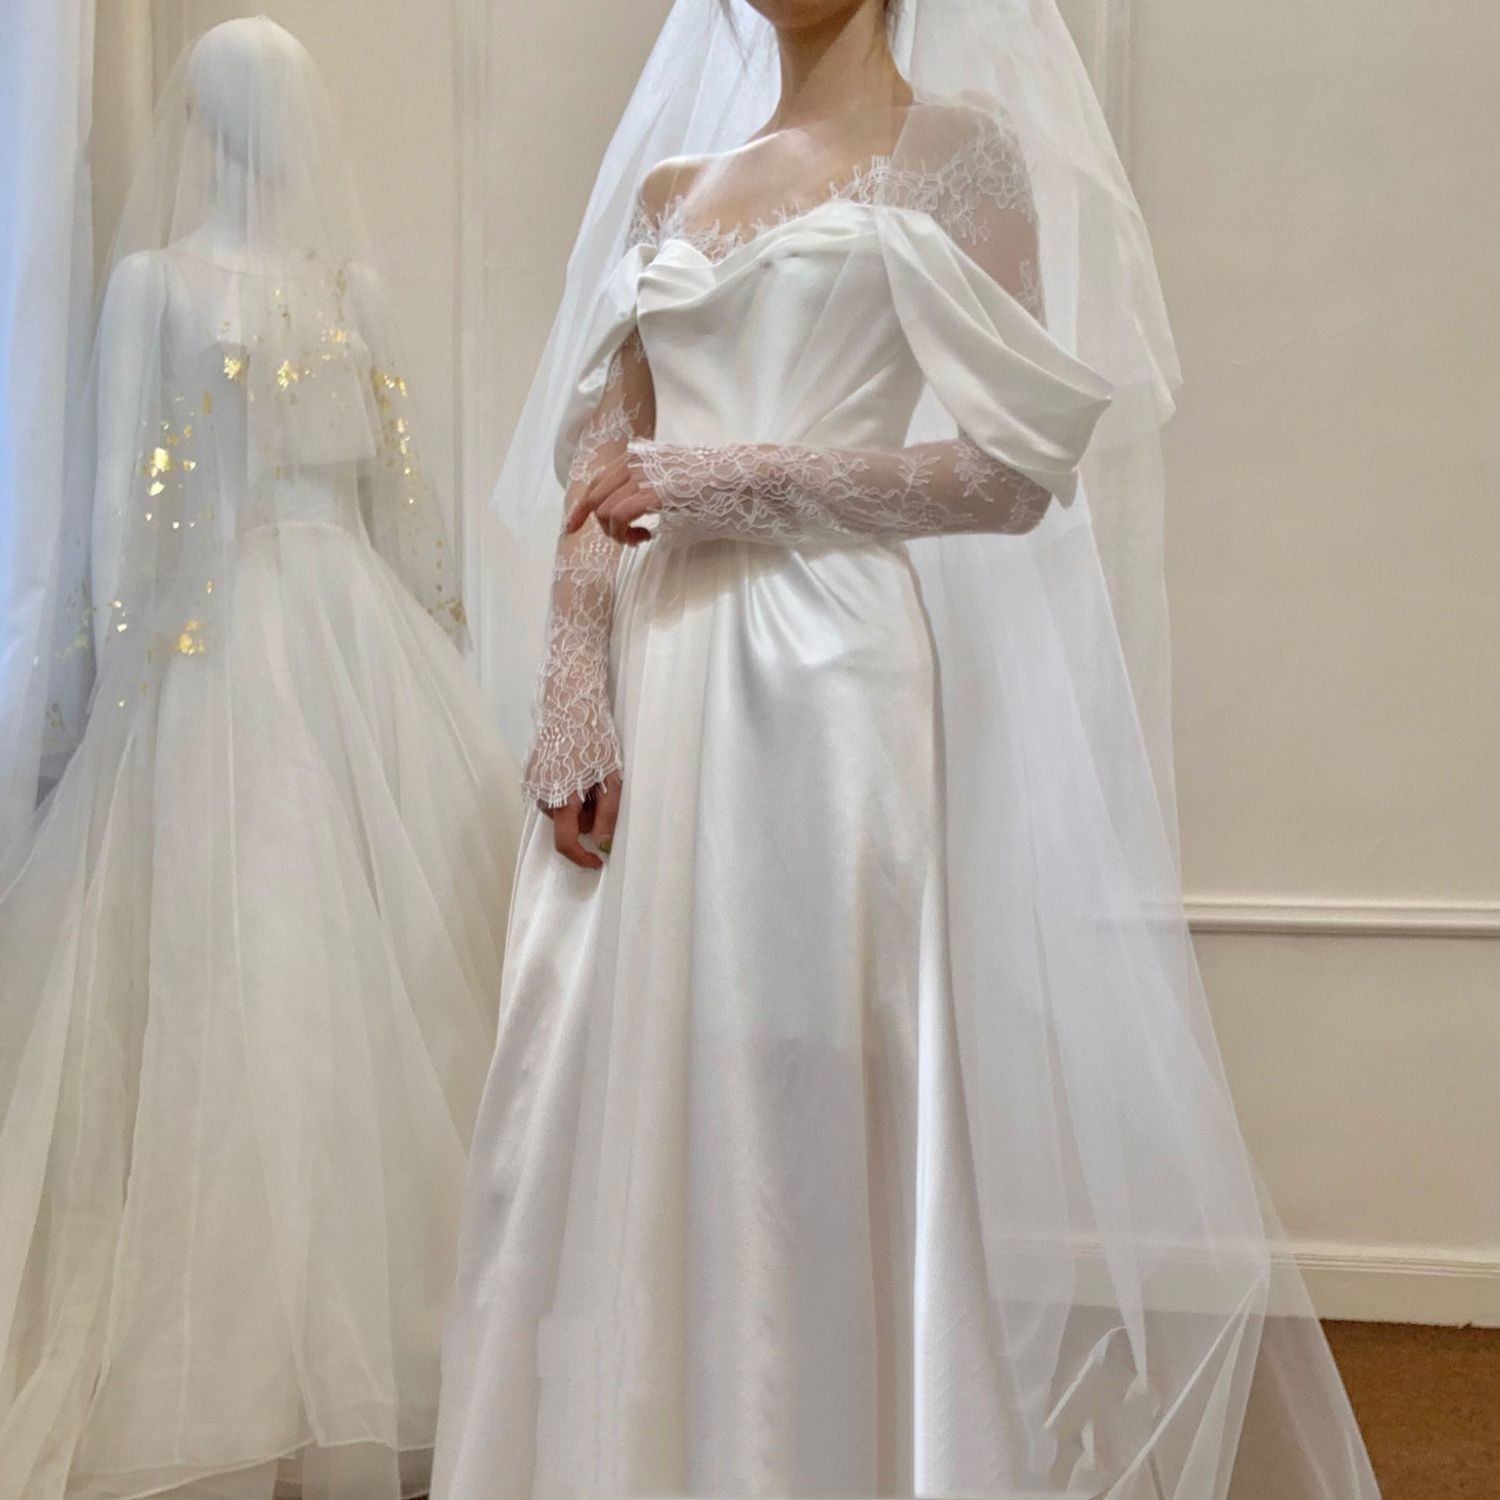 Gauze Dress Bride French Girl